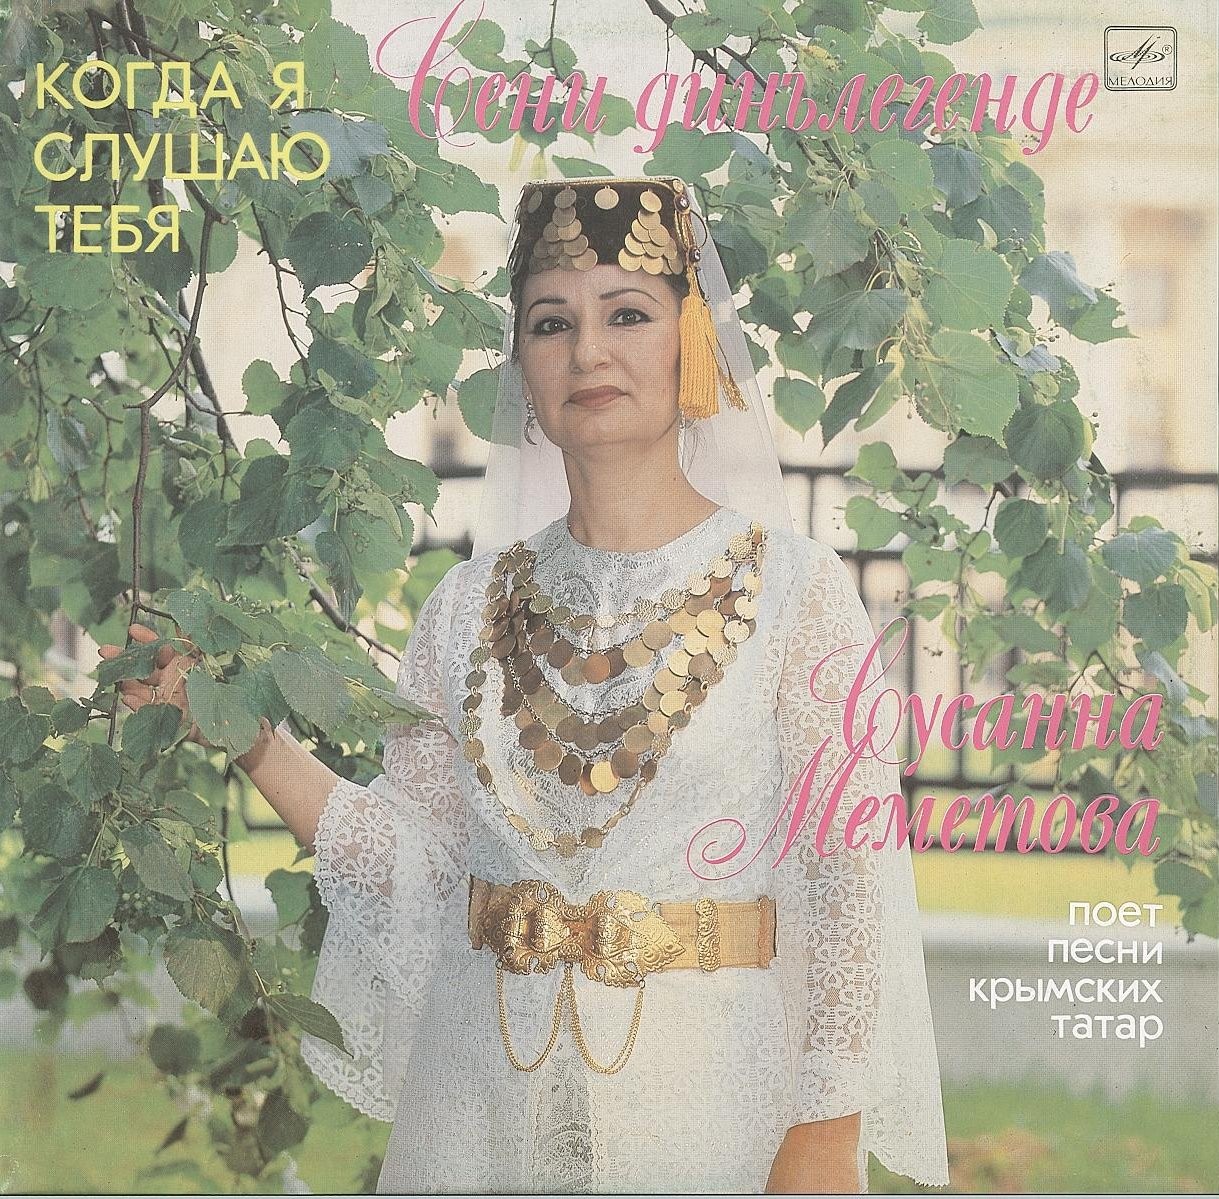 Сусанна МЕМЕТОВА. «Когда я слушаю тебя», песни крымских татар